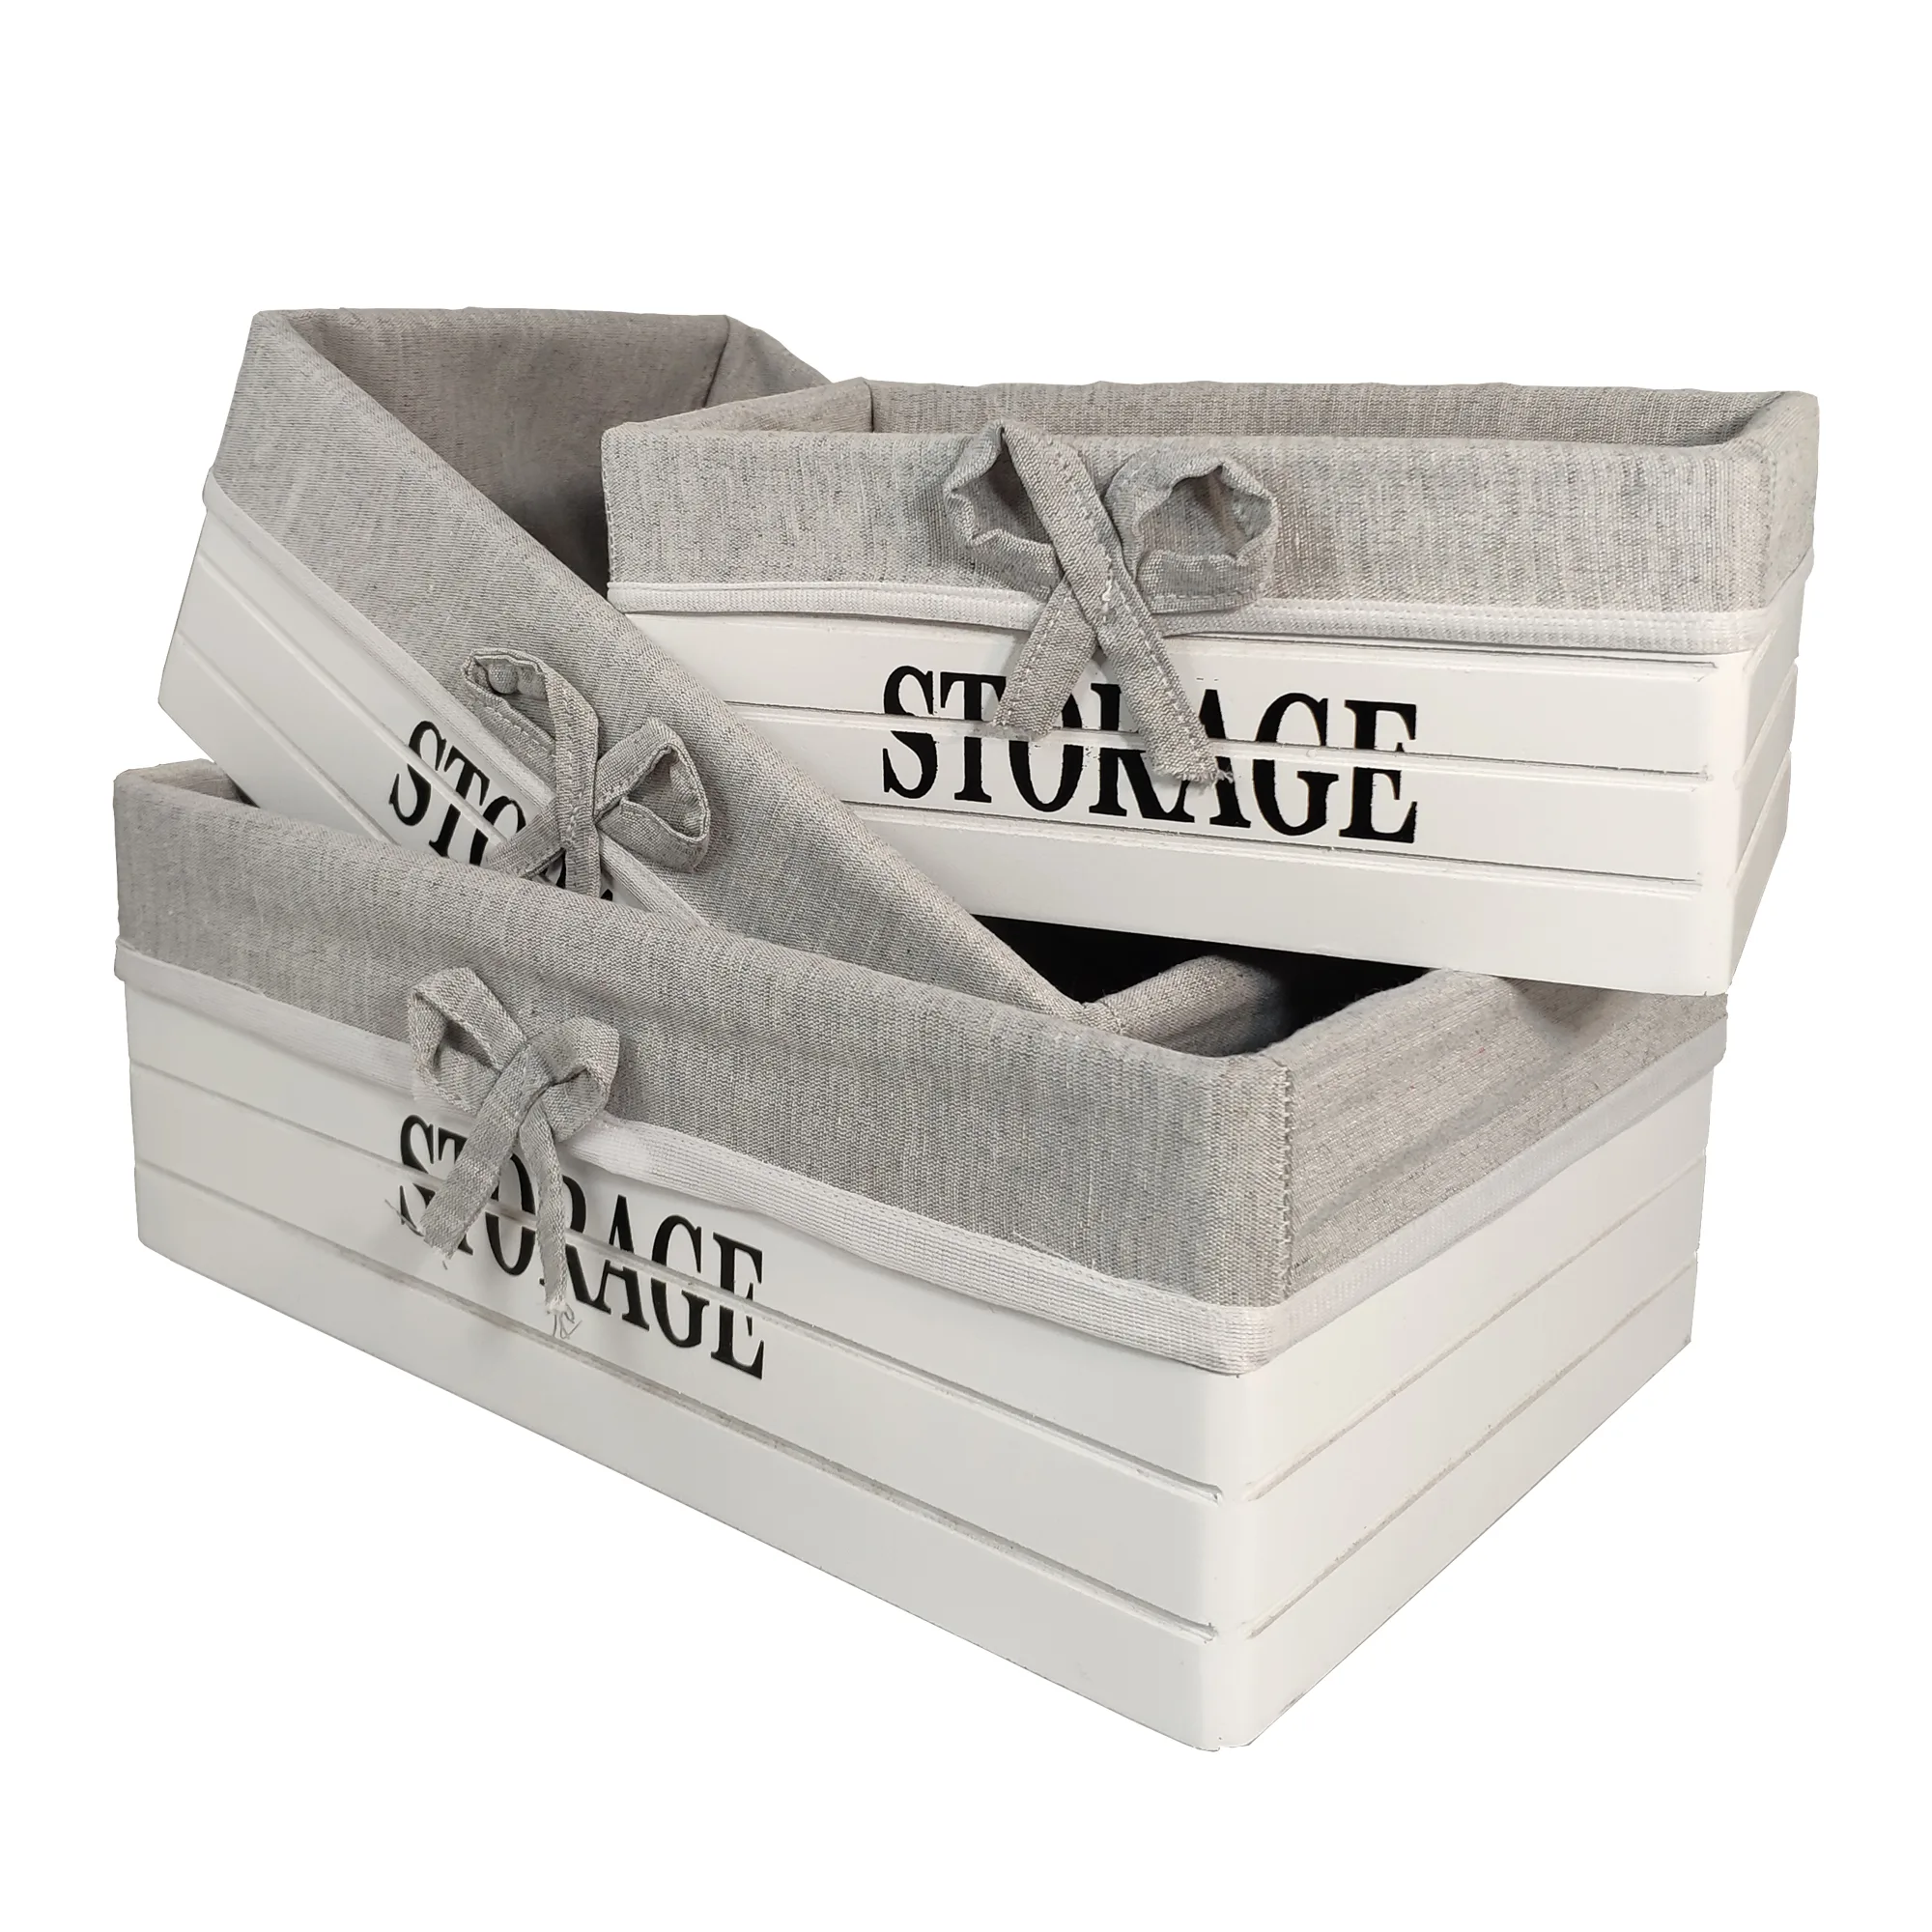 قیمت و خریدباکس نظم دهنده مدل storage مجموعه 3 عددی